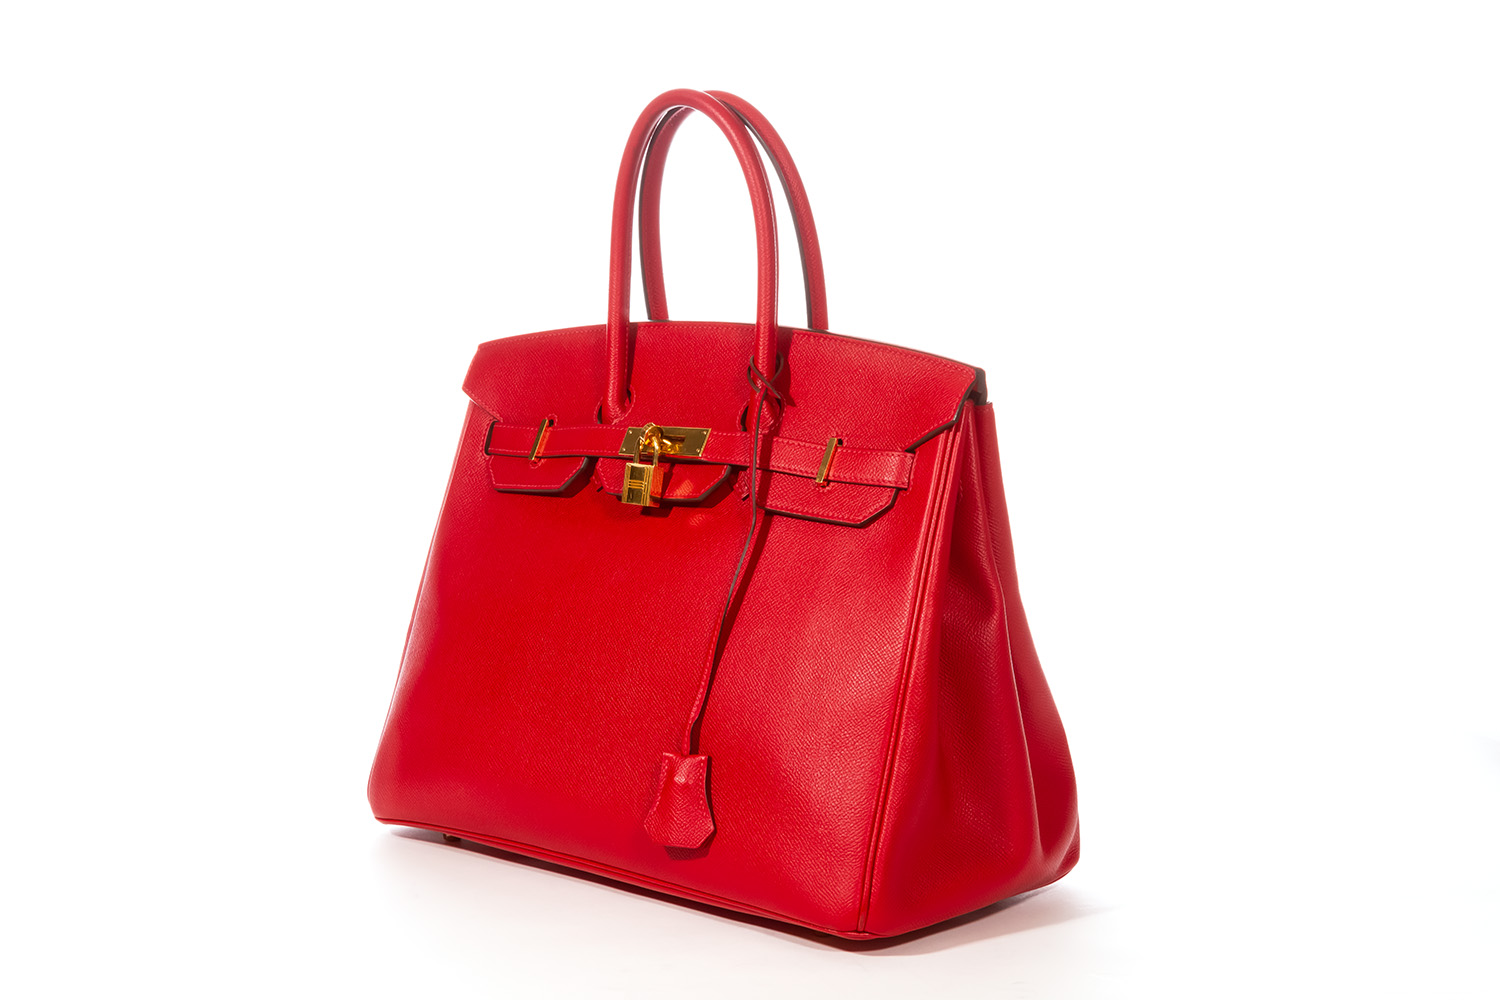 Hermes Birkin Bag, Rouge Casaque Red, 35cm, Epsom with Gold